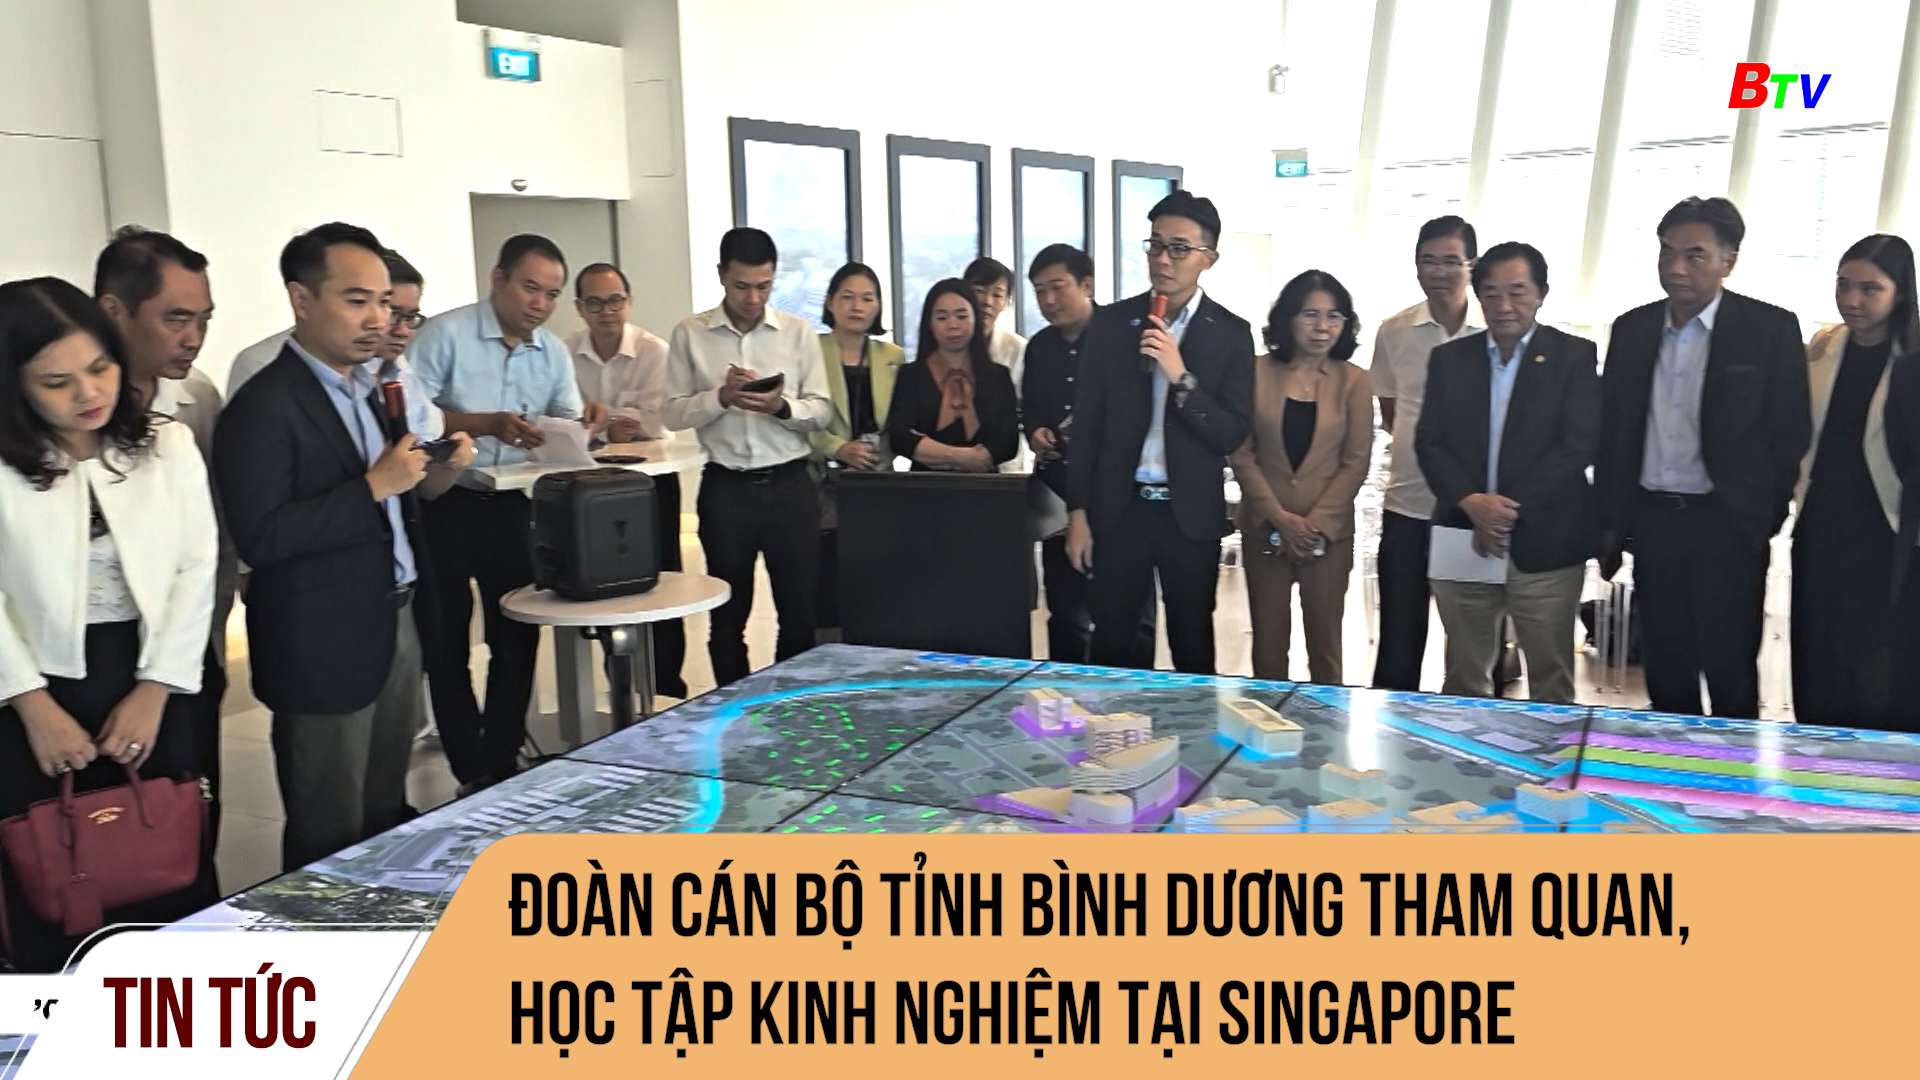 Đoàn cán bộ tỉnh Bình Dương tham quan, học tập kinh nghiệm tại Singapore